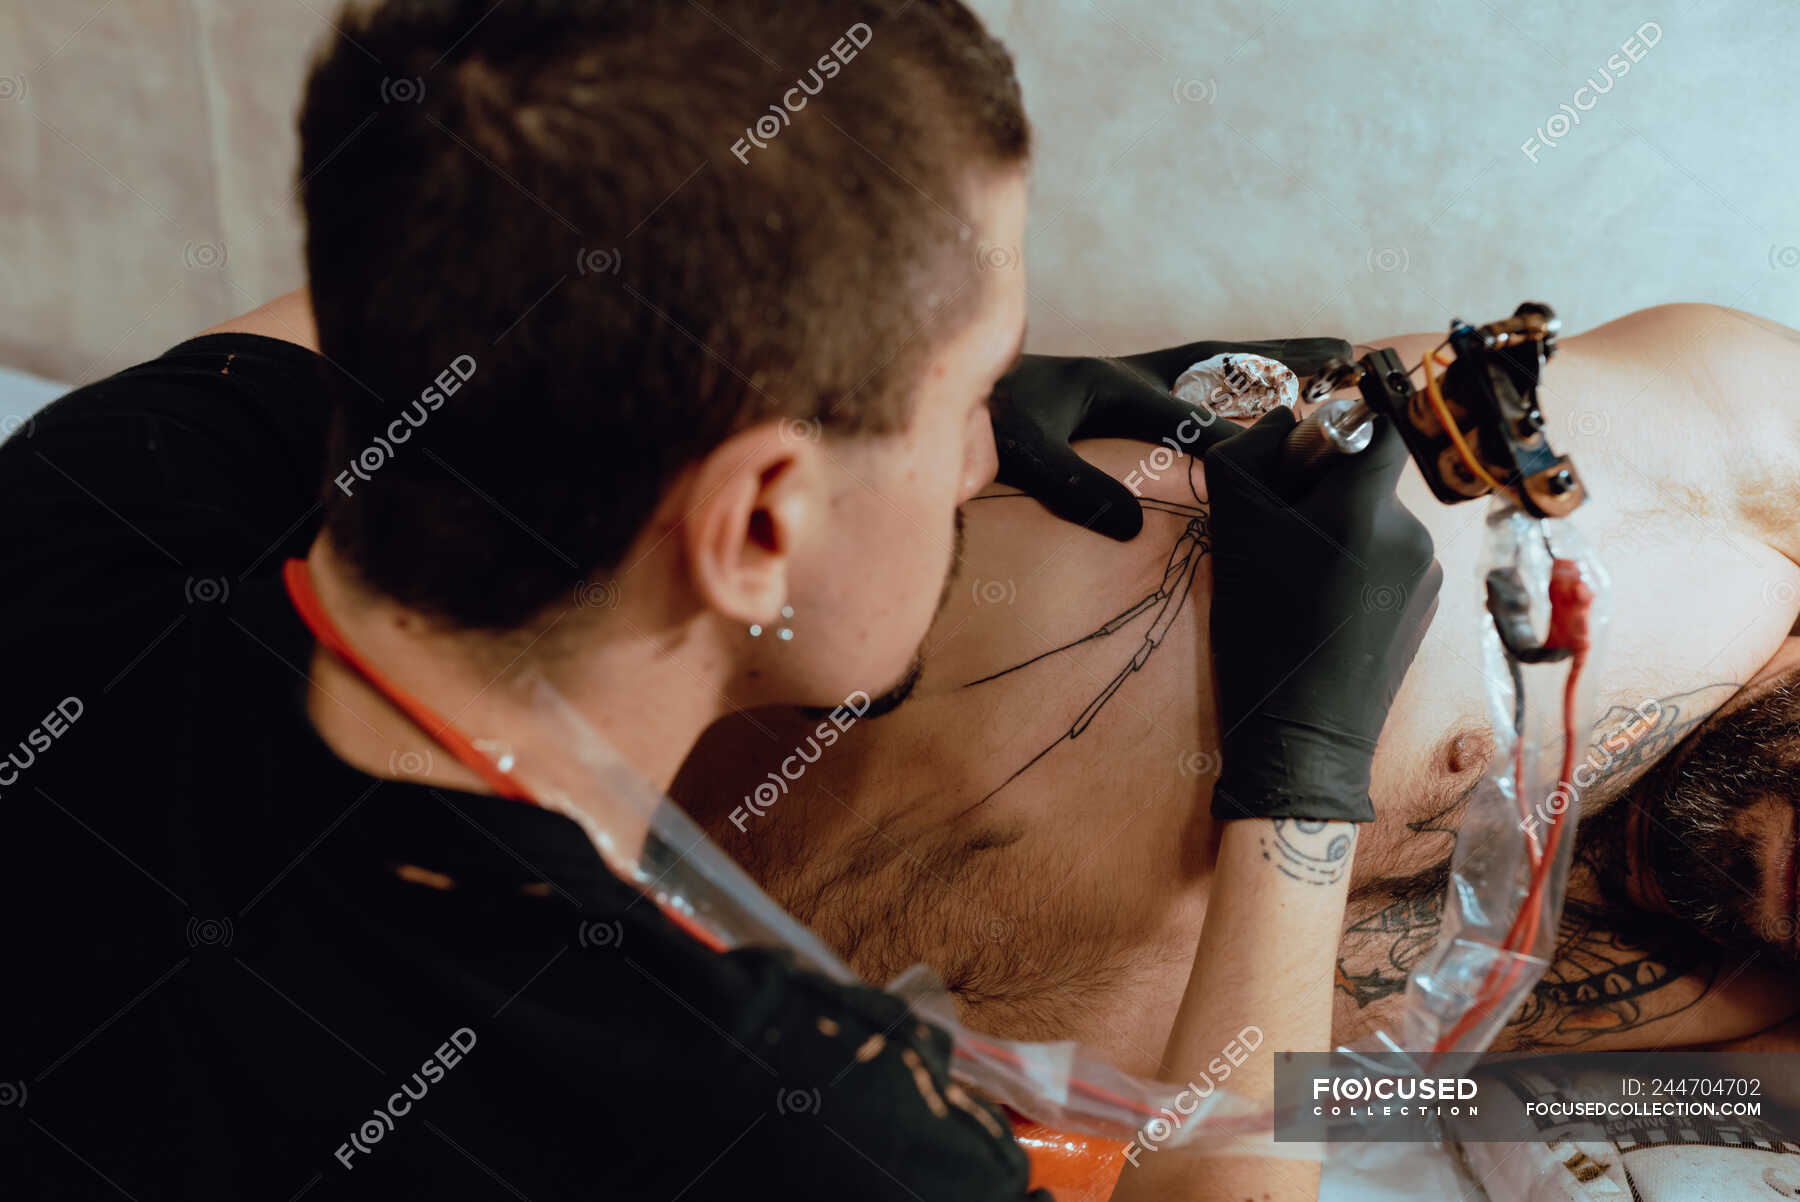 Stylish woman making tattoo — body, paint - Stock Photo | #244704702